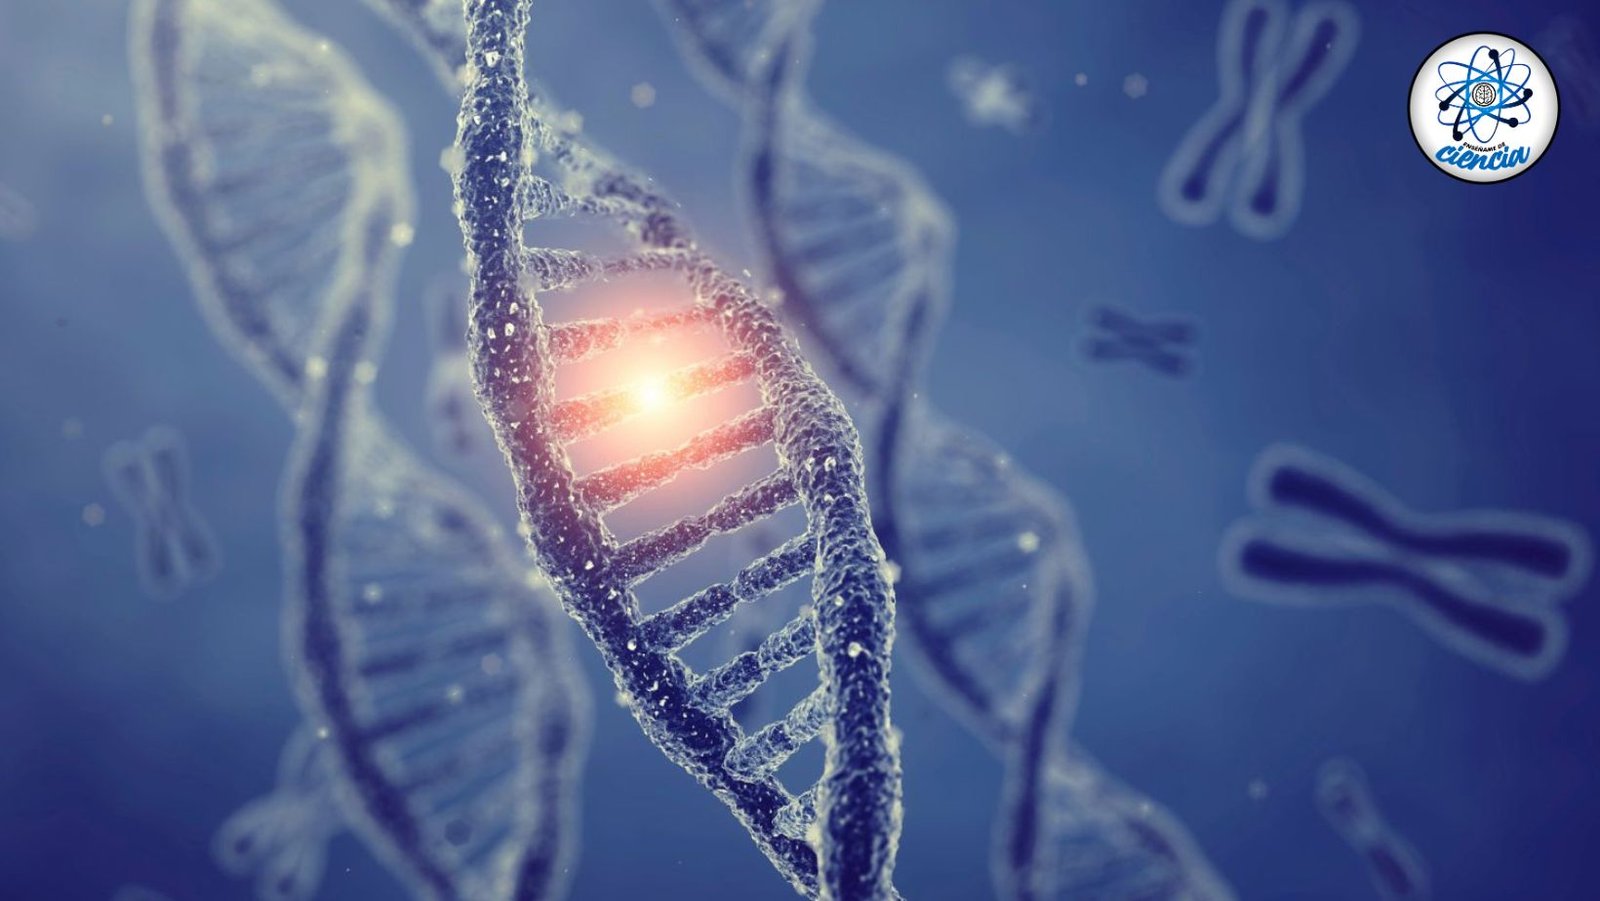 ¡Evolución en marcha! El ADN humano sigue evolucionando con nuevos genes